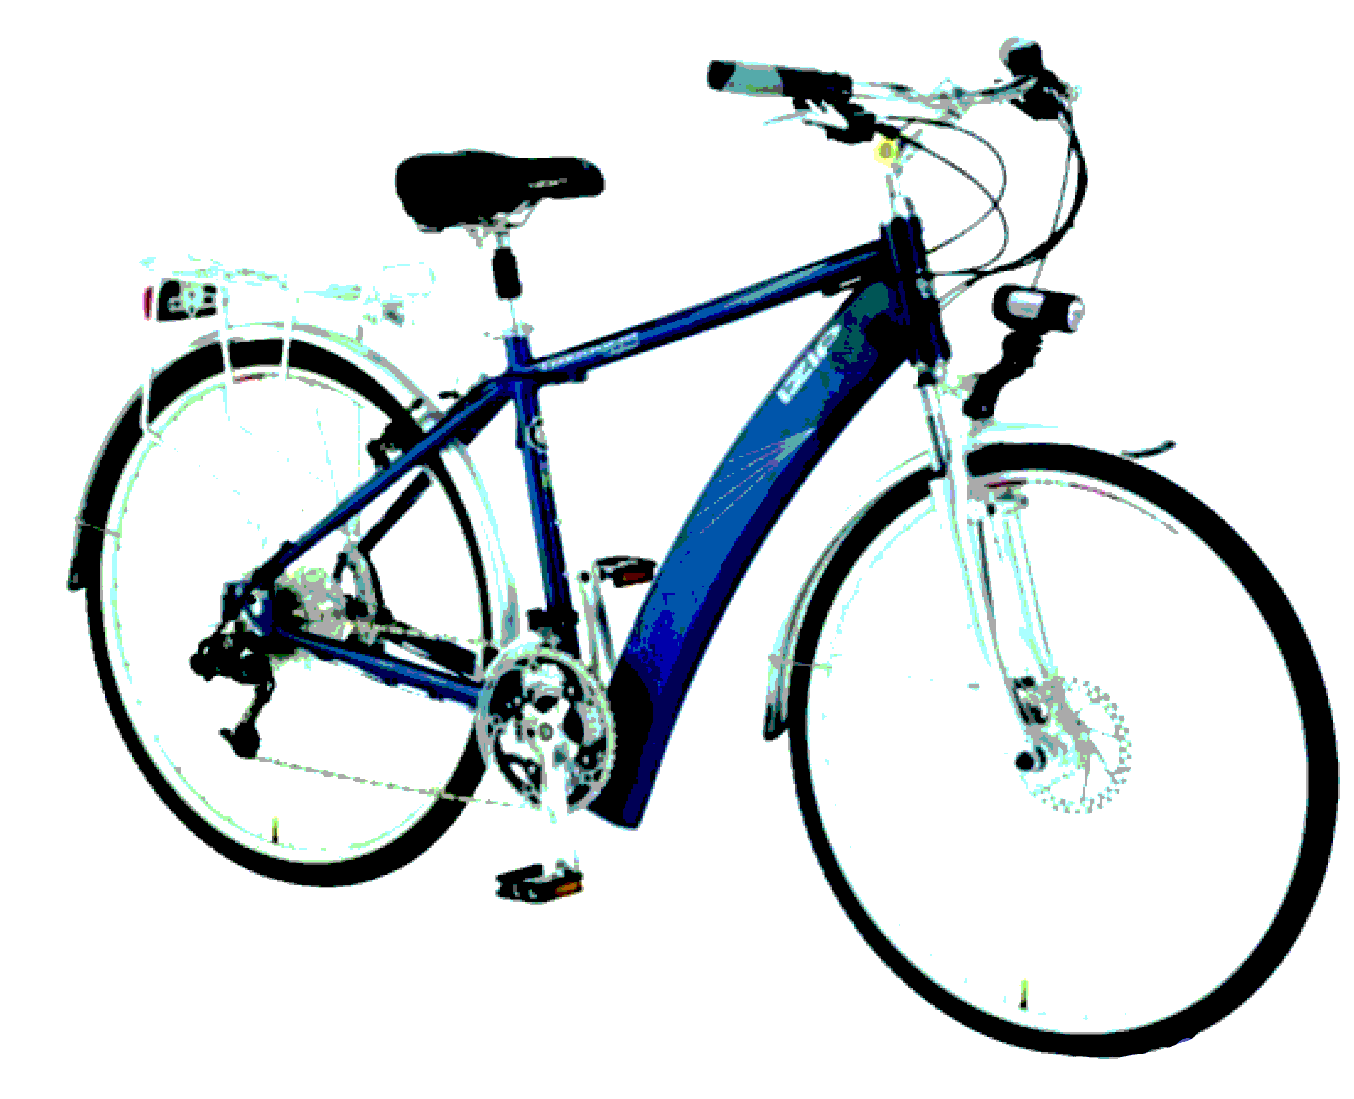 Ön fren 6. Işık 7. Zil 8. Sele 8 4 1 5 2 7 6 3 Bisiklet Bisiklet, ekolojik taşıma aracıdır. Birden çok parçadan oluşmuştur.